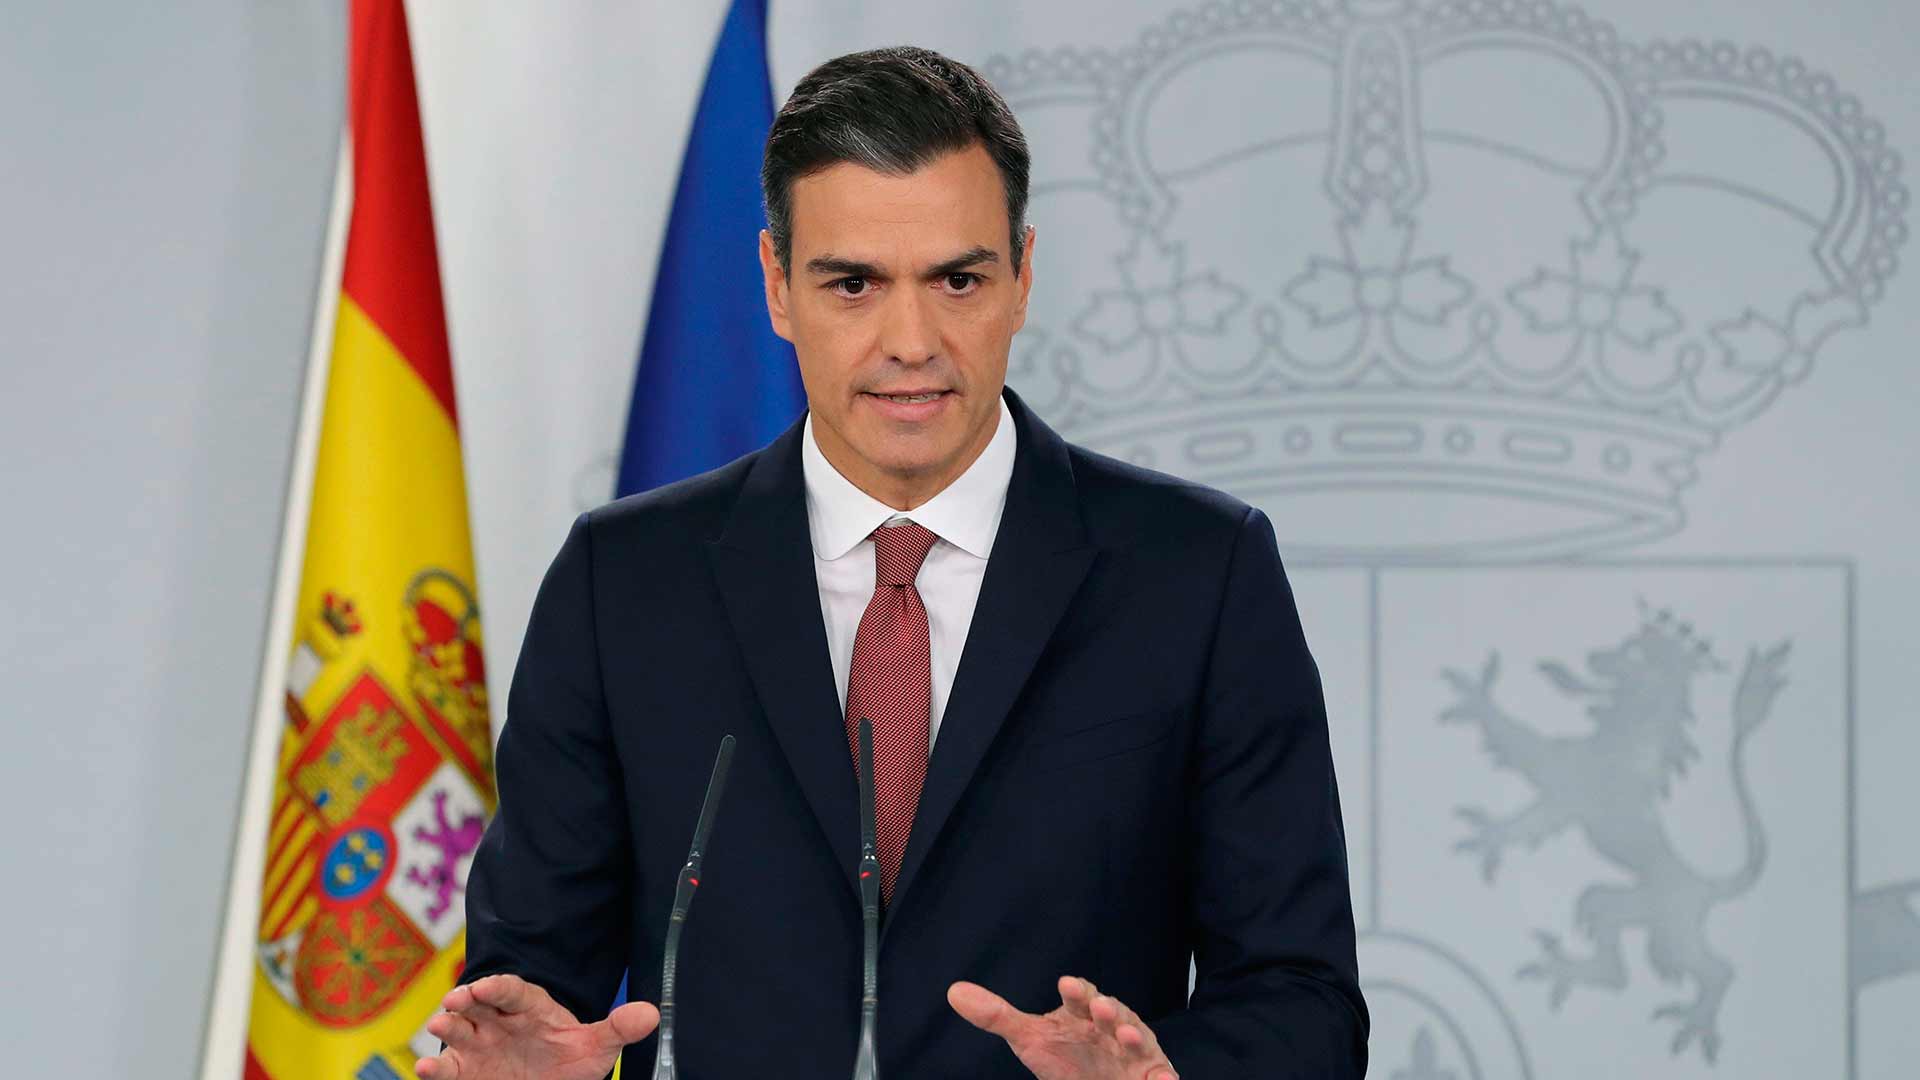 El Gobierno modificará la ley para "que nunca más los españoles paguen" el impuesto hipotecario